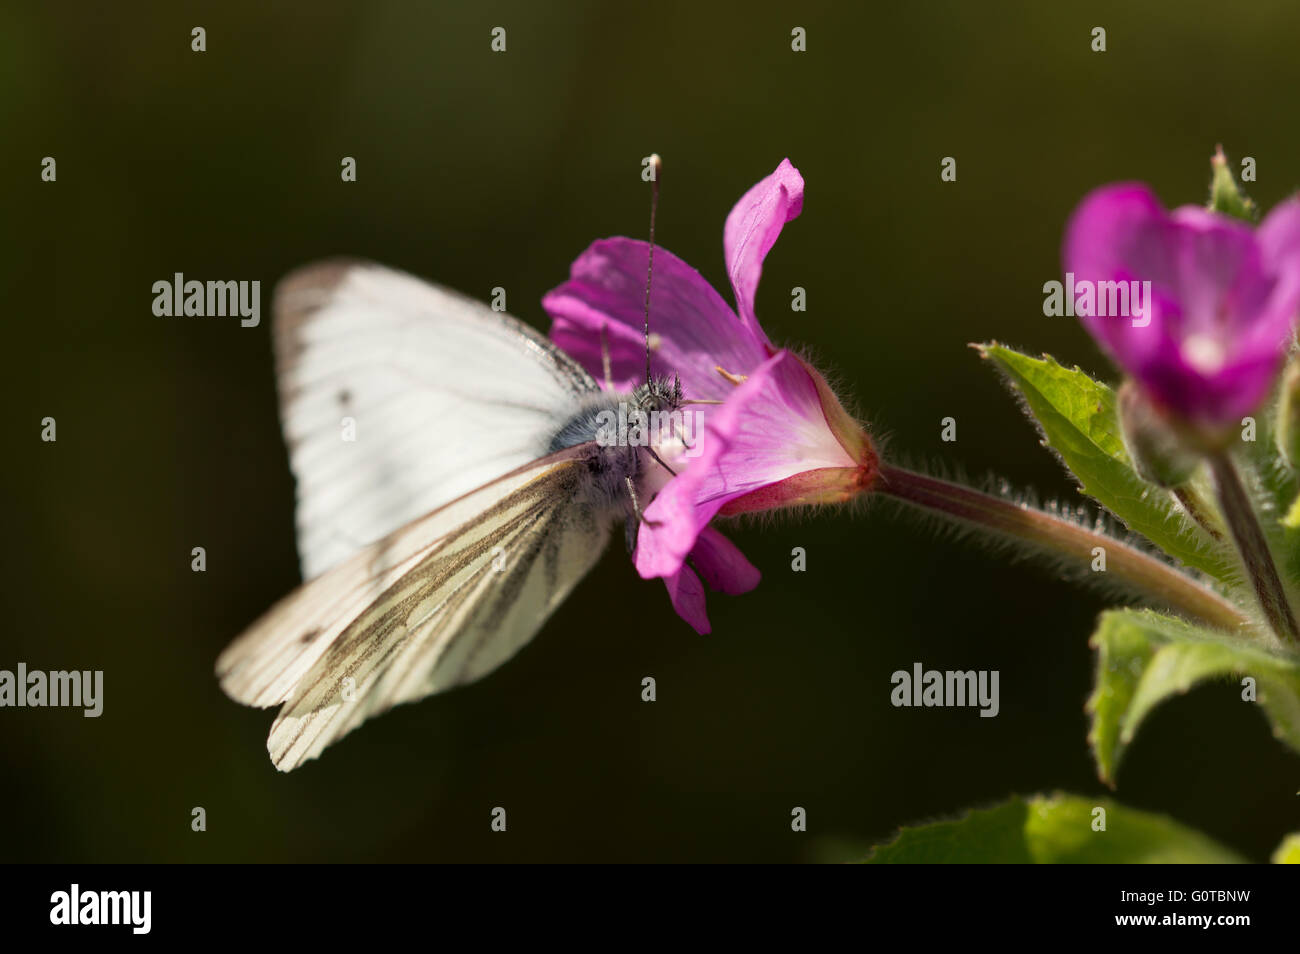 A Green-veined White butterfly (Pieris napi) feeding on a Great Willowherb (Epilobium hirsutum) flower. Stock Photo